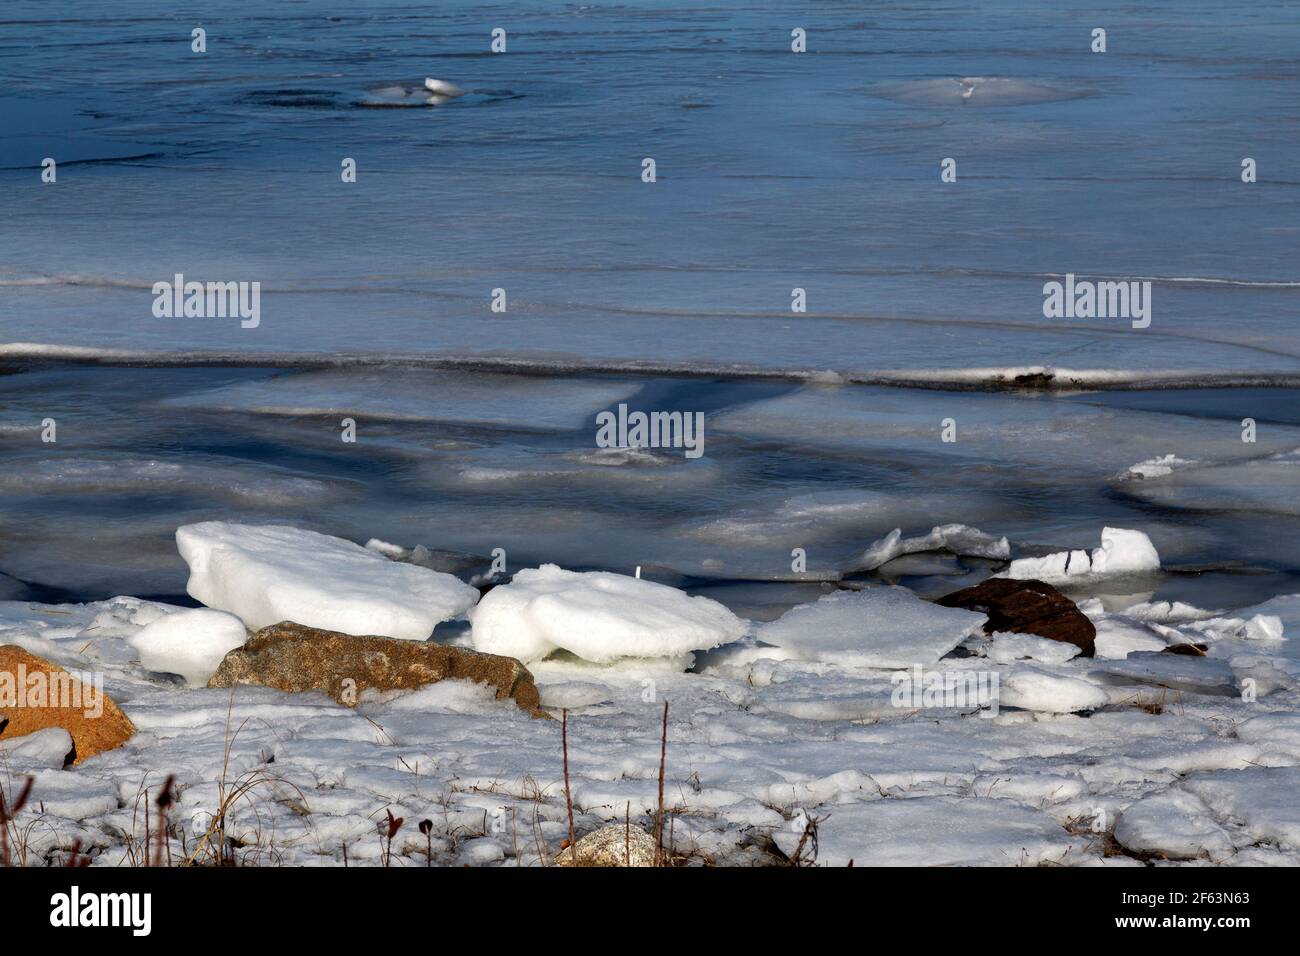 La glace en feuilles flotte dans l'anse partiellement gelée de Rafuses Cove, en Nouvelle-Écosse, au Canada. De la glace se trouve également sur la rive. Banque D'Images